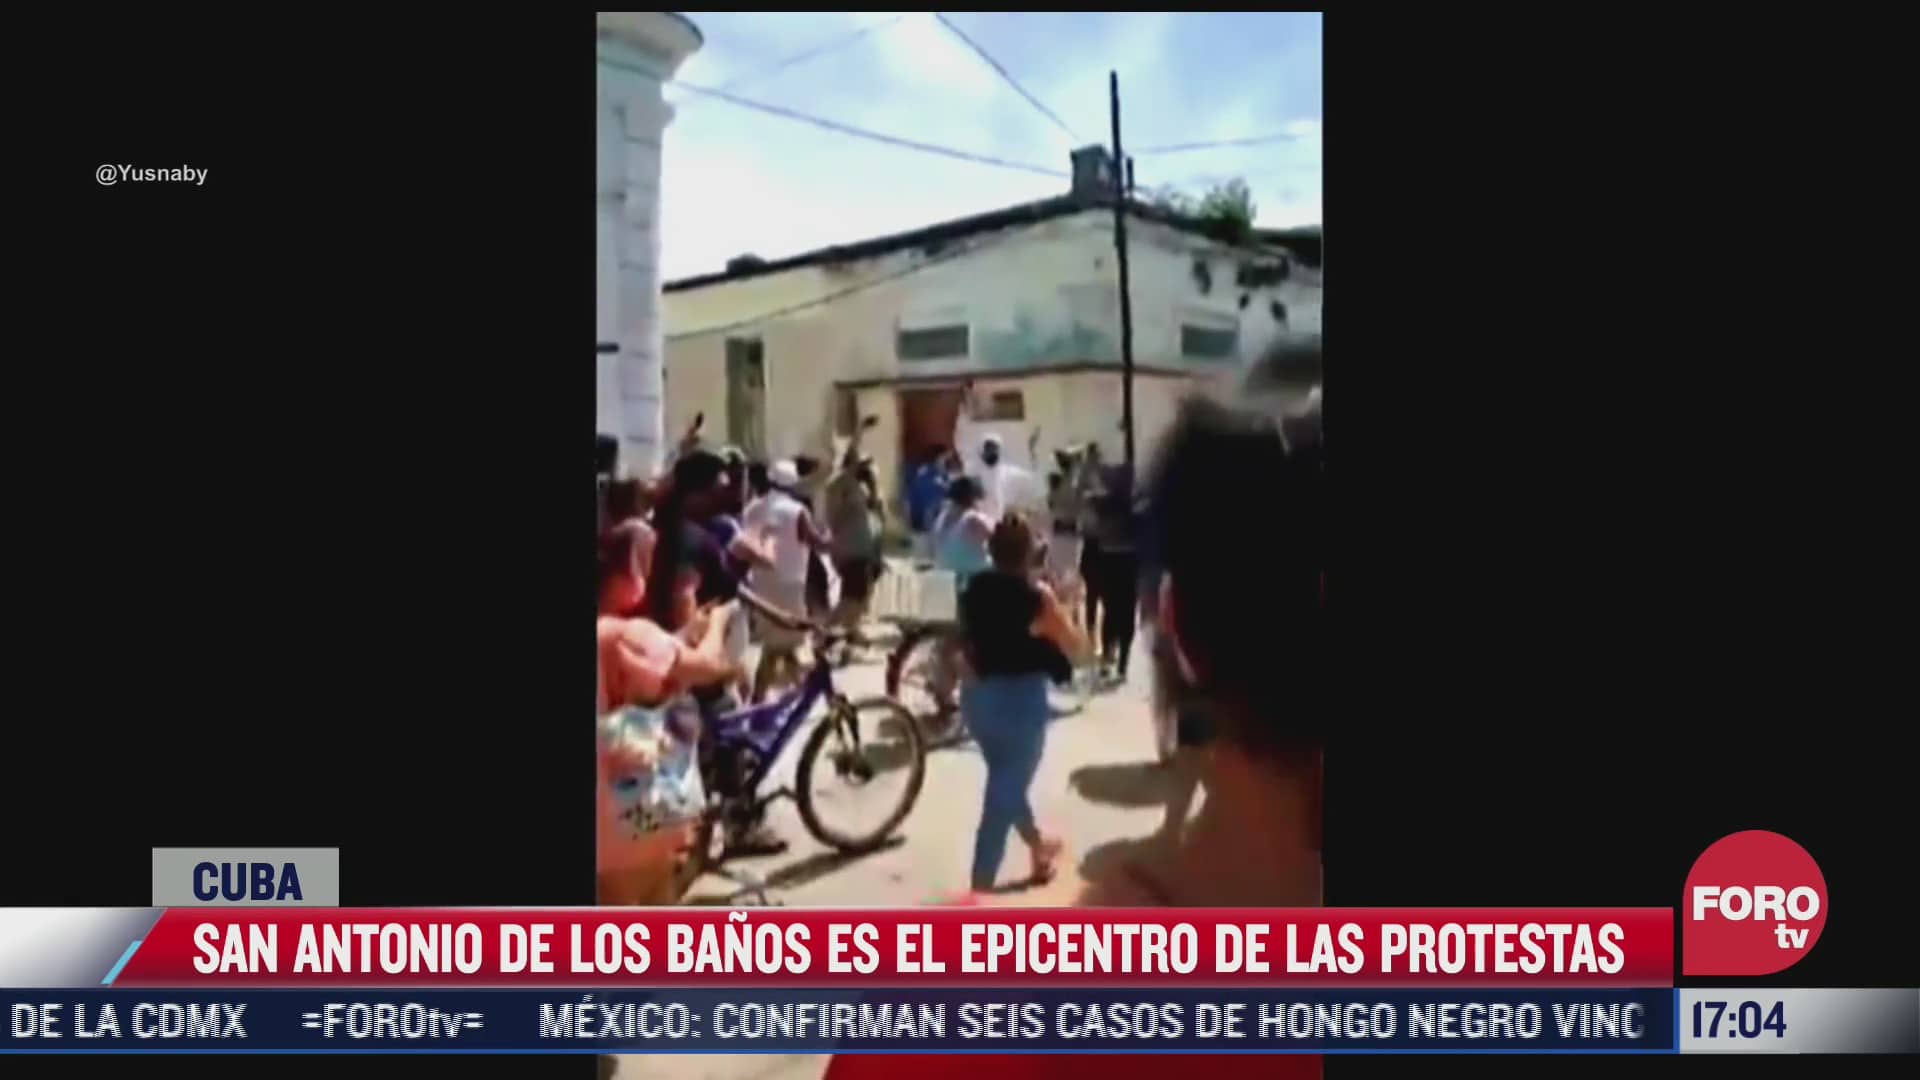 se registran protestas en cuba contra el gobierno